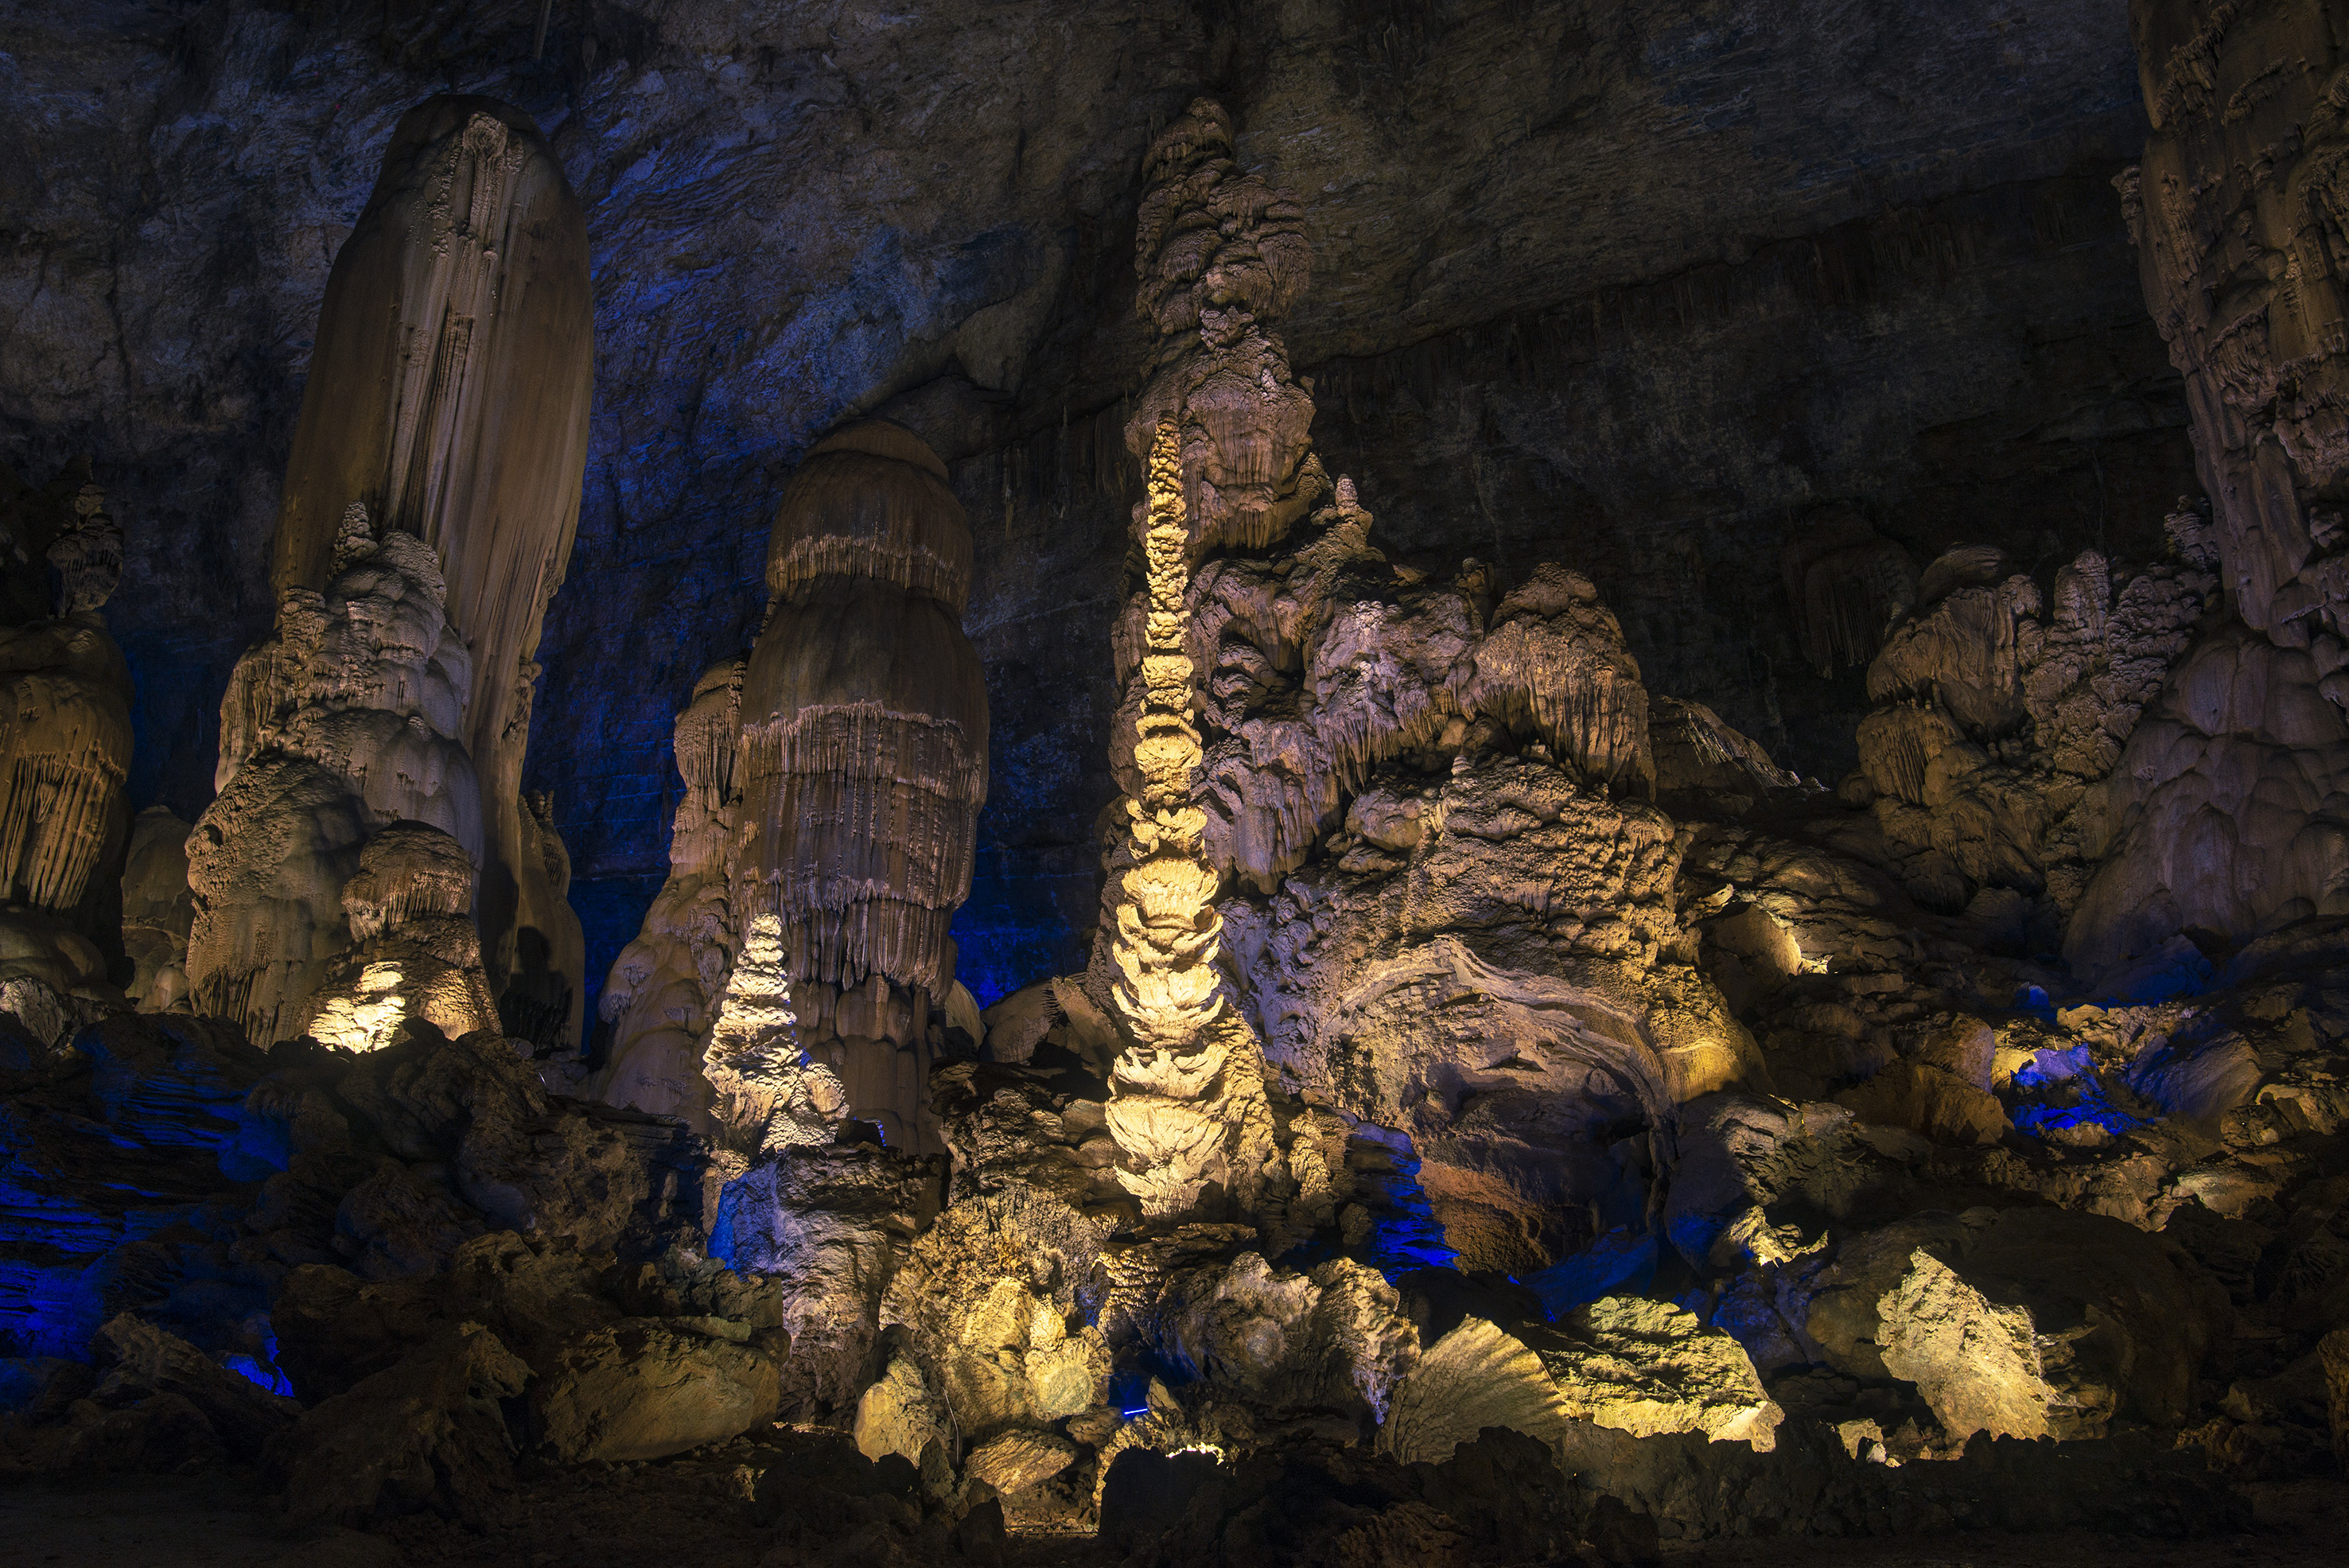 原创这个洞穴位居全国十大奇洞之首,常年恒温16度,贵州人的避暑胜地